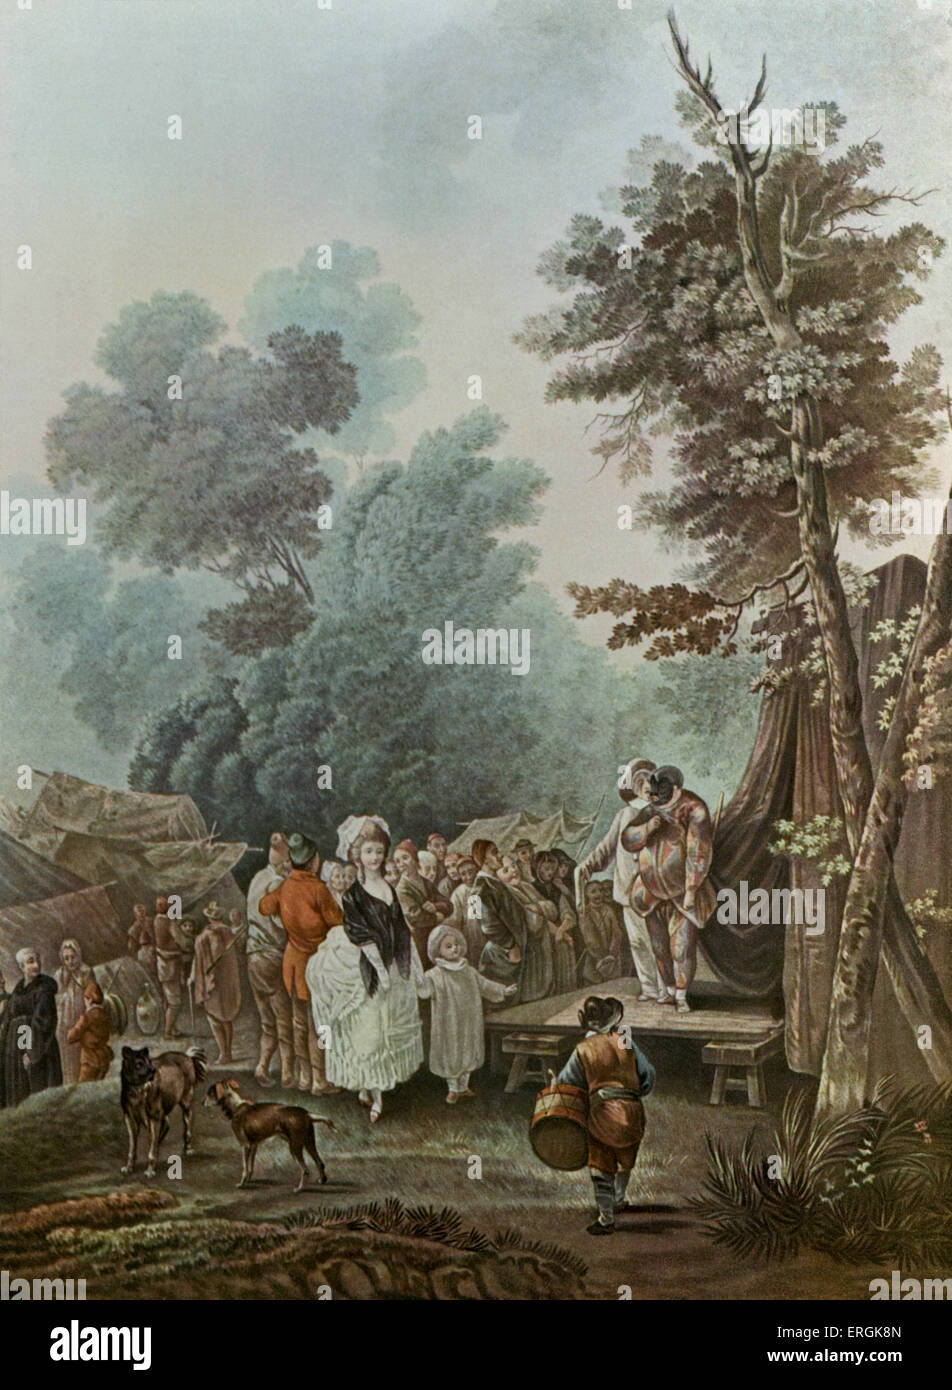 La Foire de Village (la aldea justo), 1785 - después del grabado por Charles Melchior Descourtis, después Nicolas Antoine Taunay Foto de stock